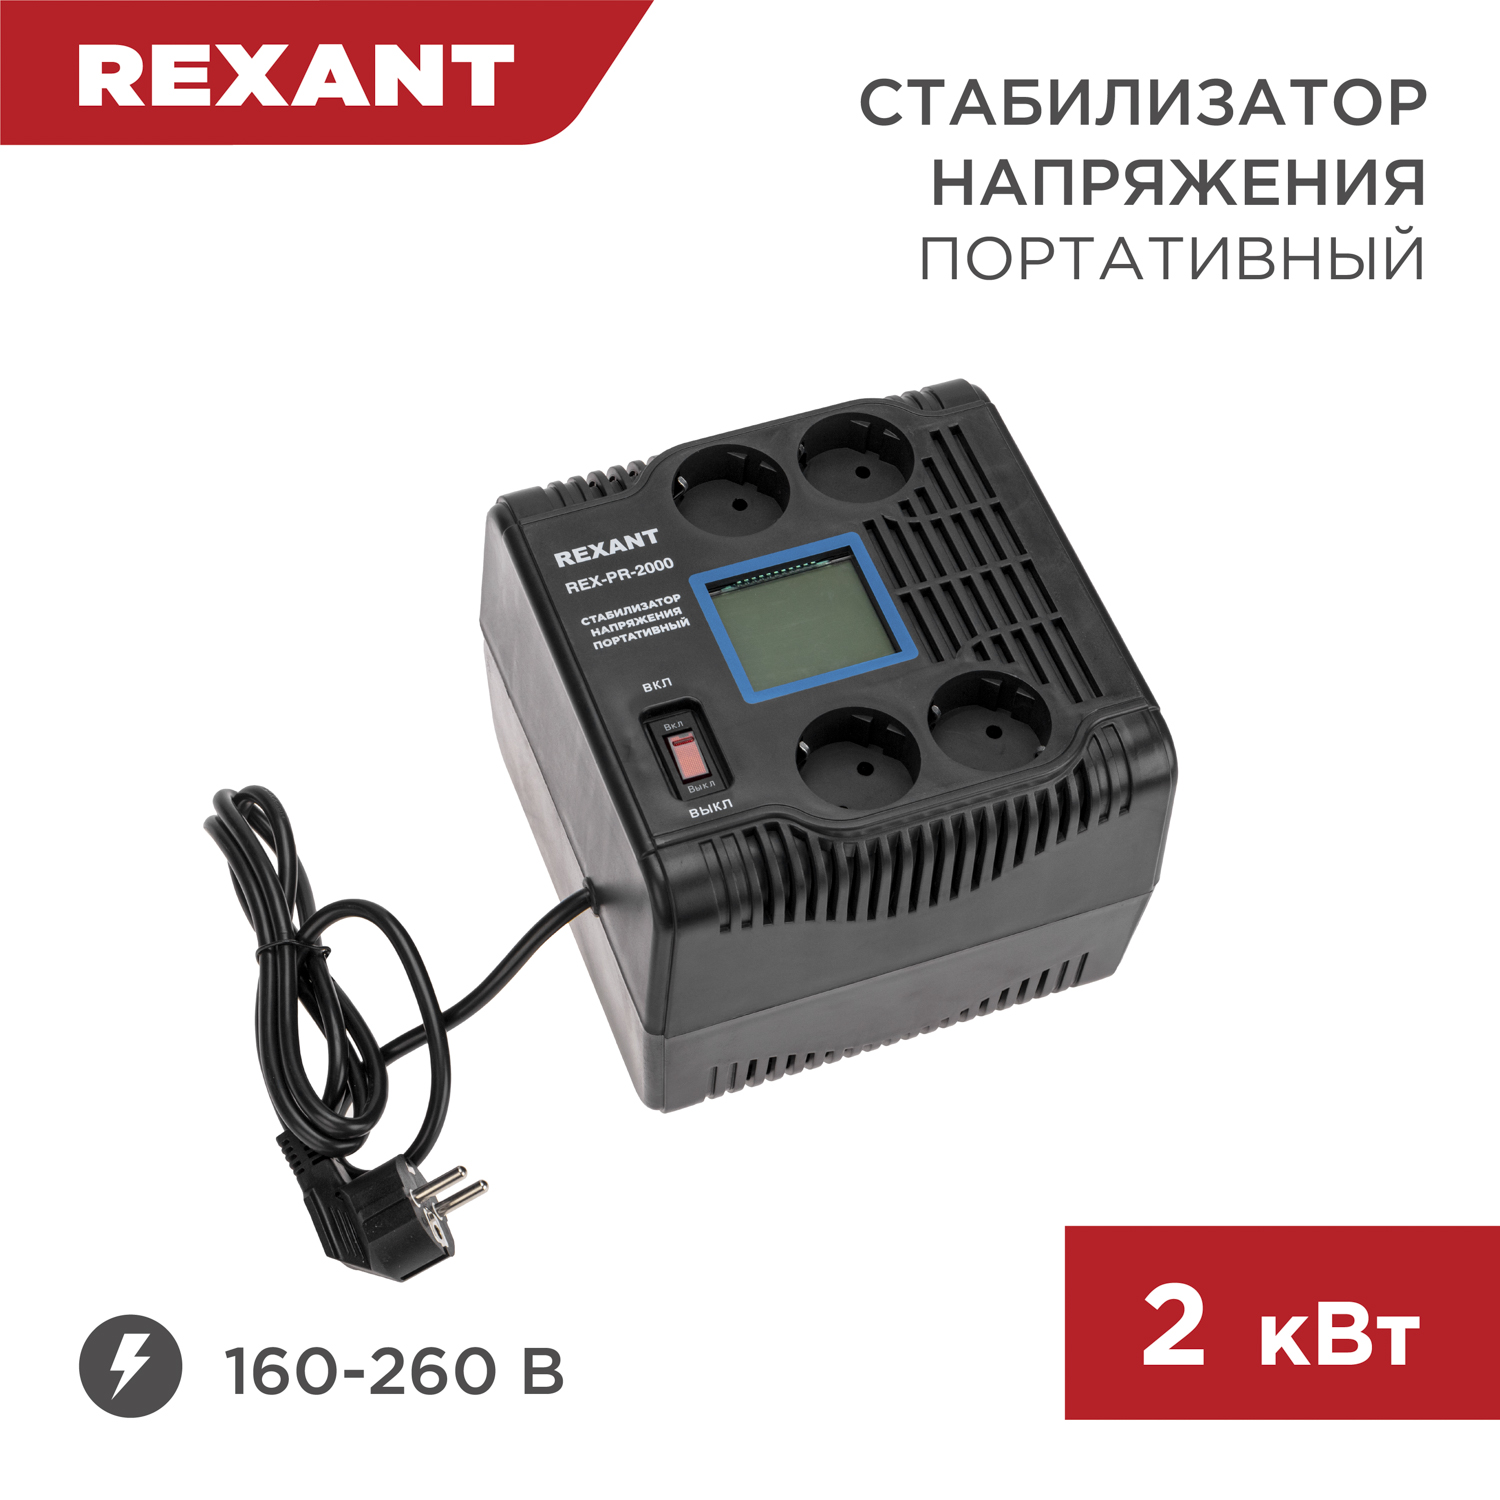 Стабилизатор напряжения портативный REXANT REX-PR-2000 11-5032 стабилизатор напряжения портативный rexant rex pr 1000 11 5029